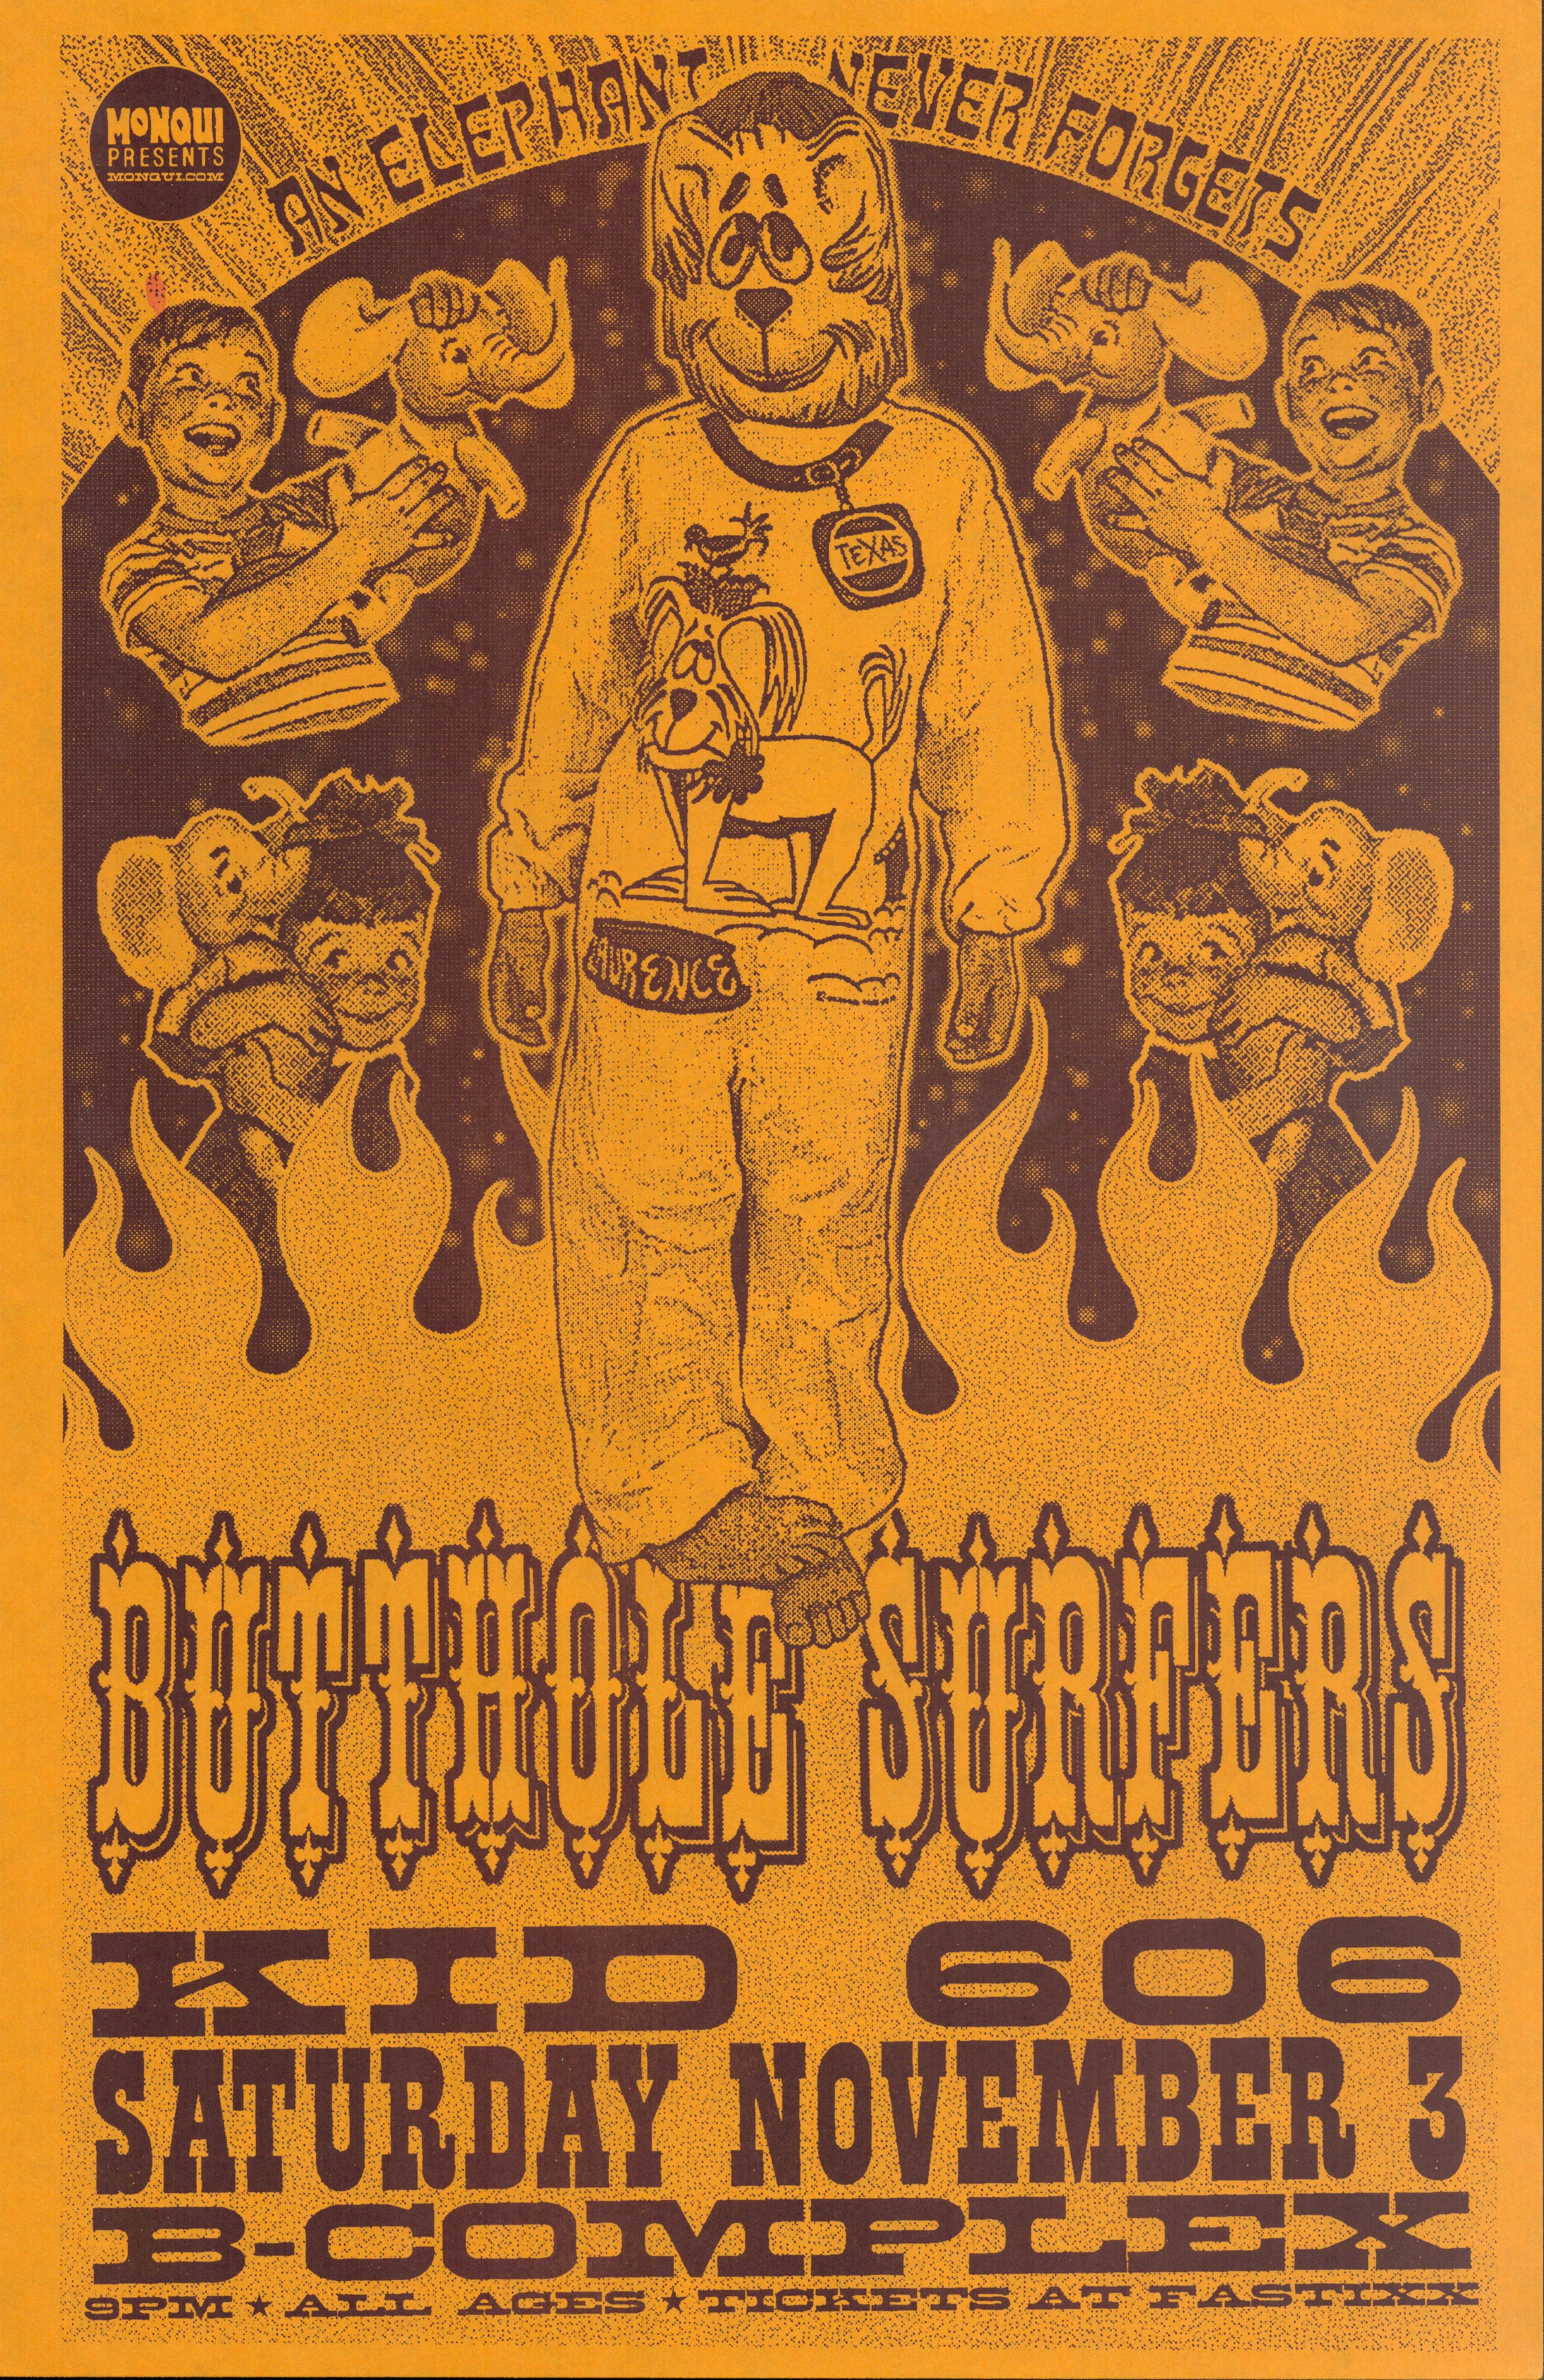 MXP-245.3 Butthole Surfers B Complex 2001 Concert Poster